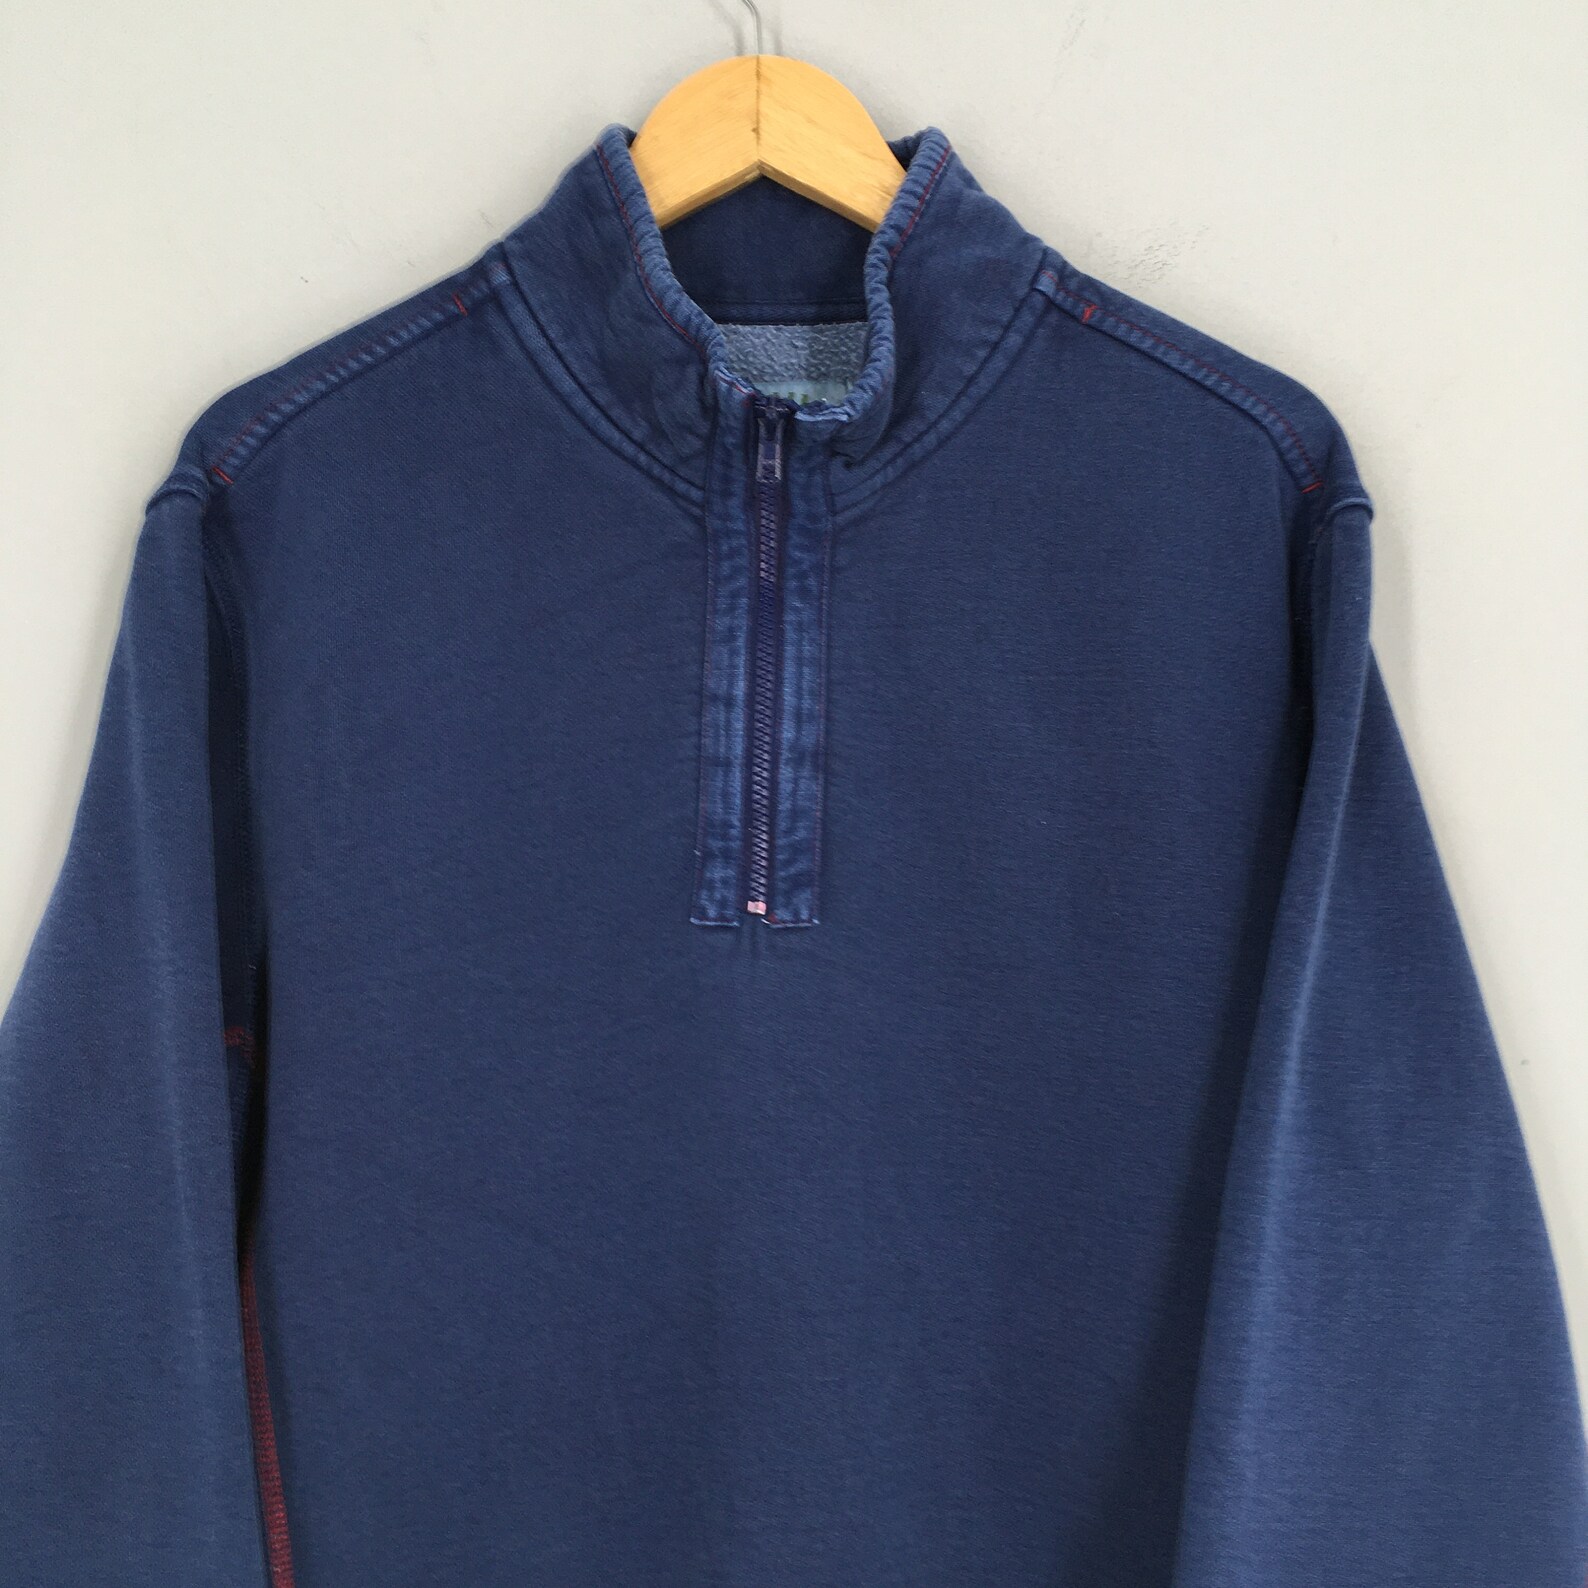 Orvis Sweatshirt Medium Blue Vintage 1990's Orvis Pullover | Etsy